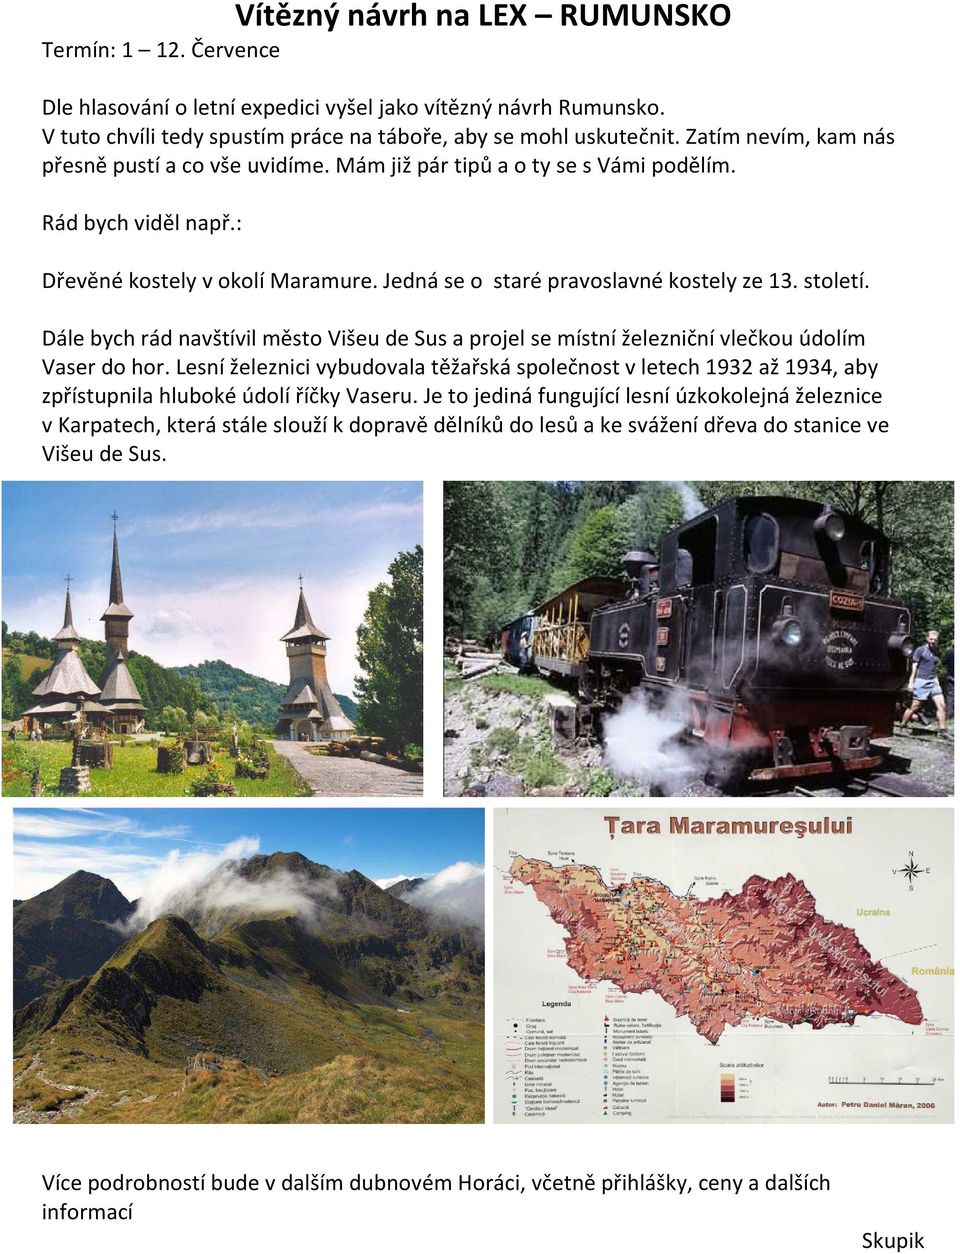 století. Dále bych rád navštívil město Višeu de Sus a projel se místní železniční vlečkou údolím Vaser do hor.